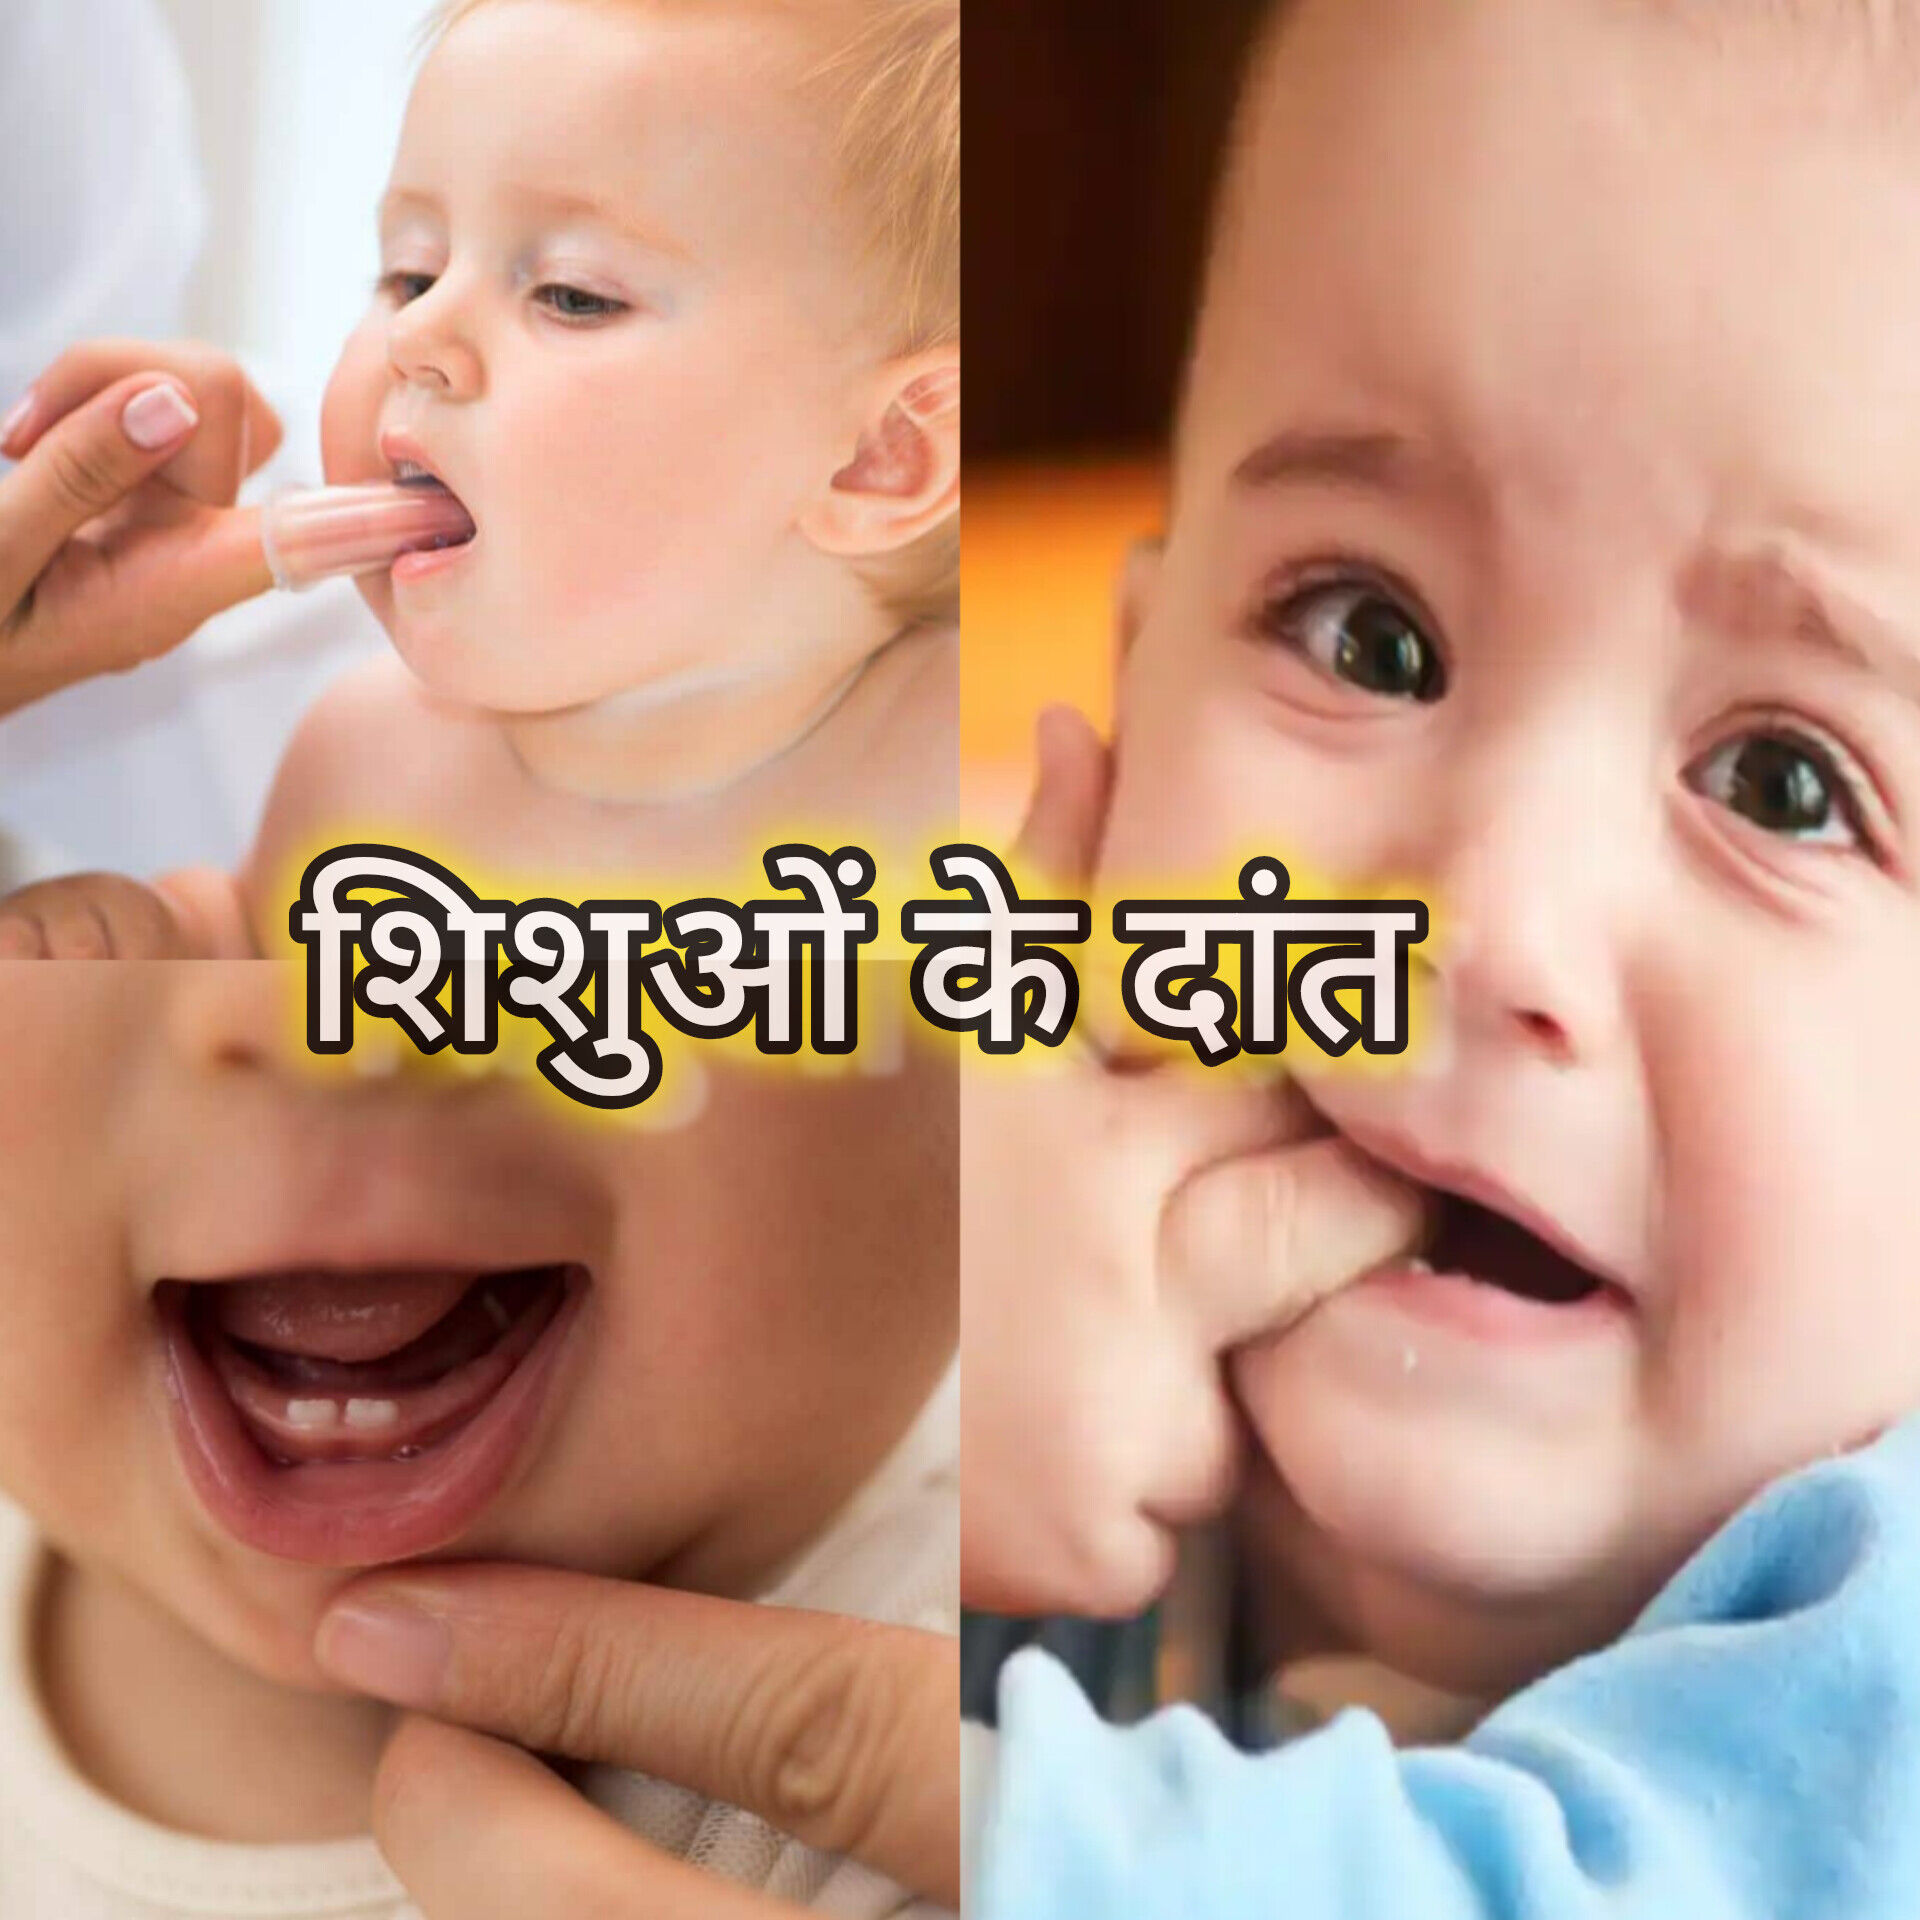 बच्चों के दांत निकलने की परेशानी: लक्षण, उपाय और सावधानियां